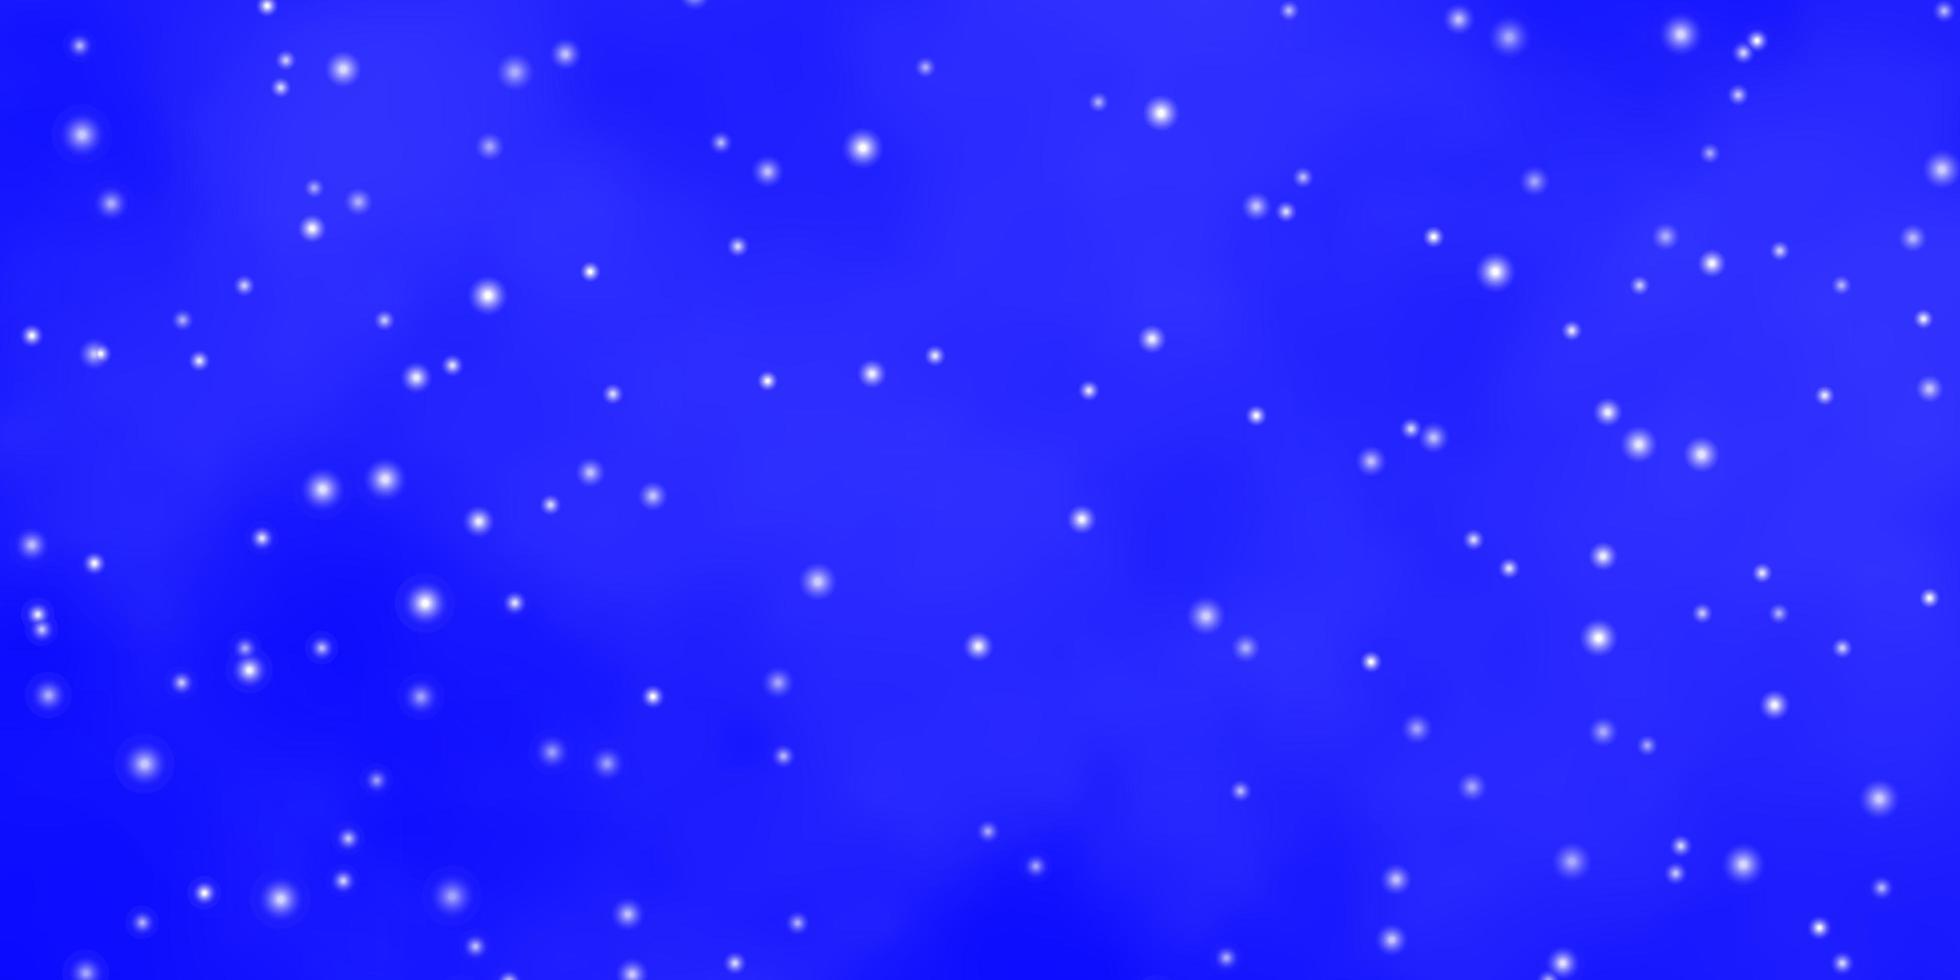 Plantilla de vector azul claro con estrellas de neón ilustración decorativa con estrellas en patrón de plantilla abstracta para envolver regalos